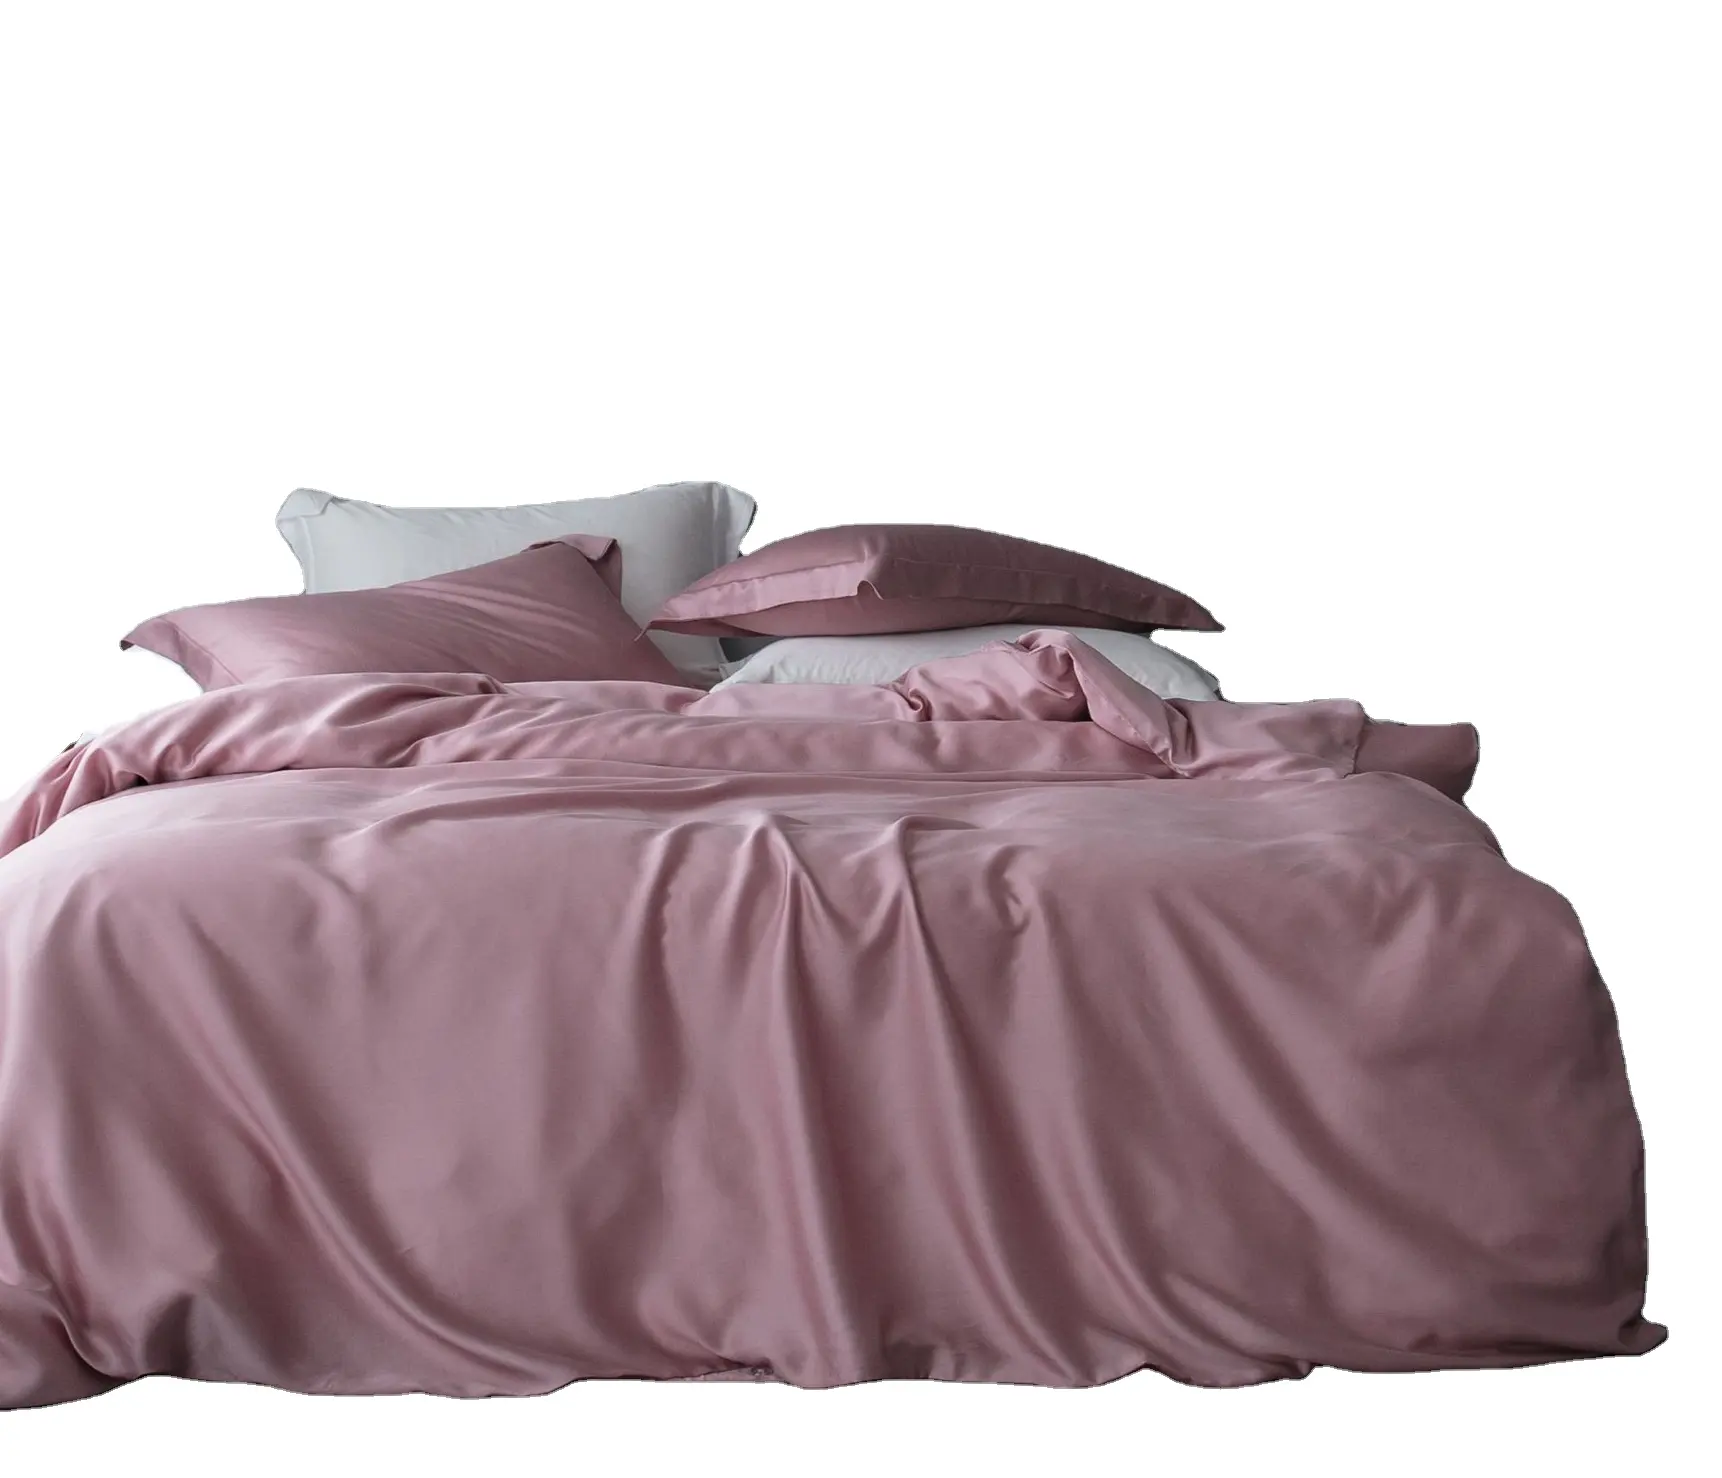 होम टेक्सटाइल 100% tencel बिस्तर सेट अनुकूलन रंग bedsheet सेट शांत भावना duvet कवर सेट